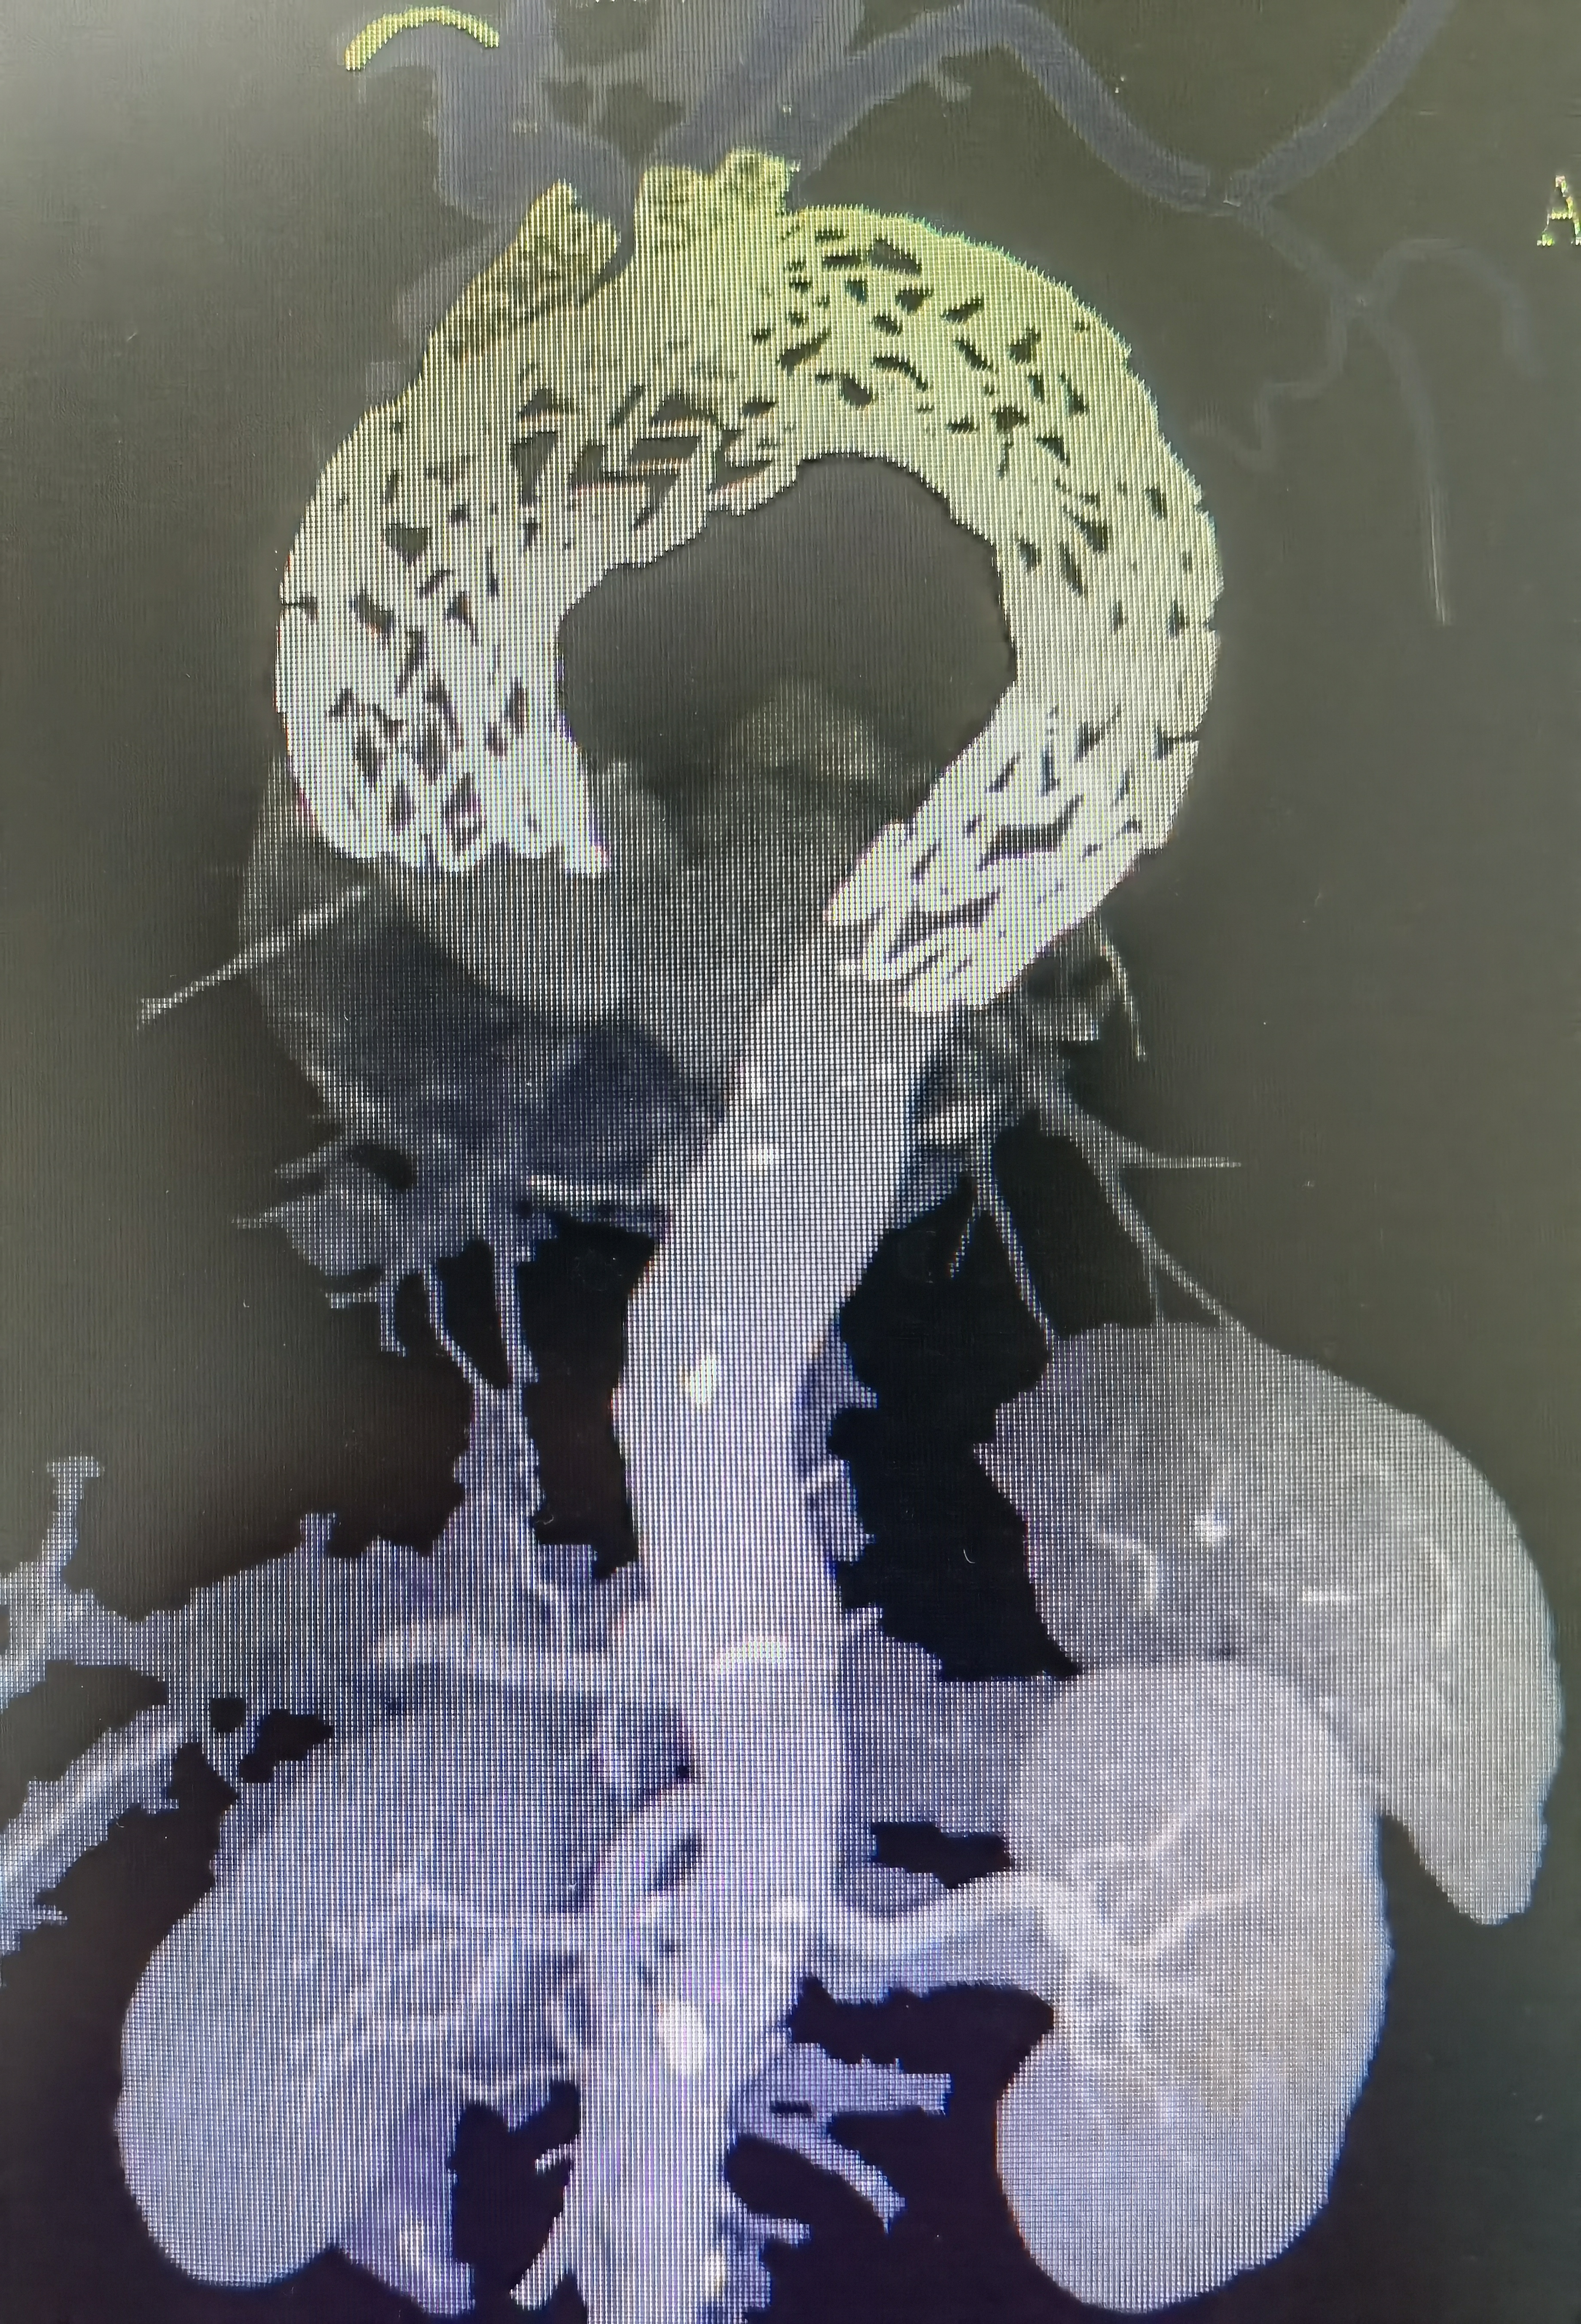 武汉大学人民医院应用体外 3D 模型重建人体最大血管降服主动脉瘤